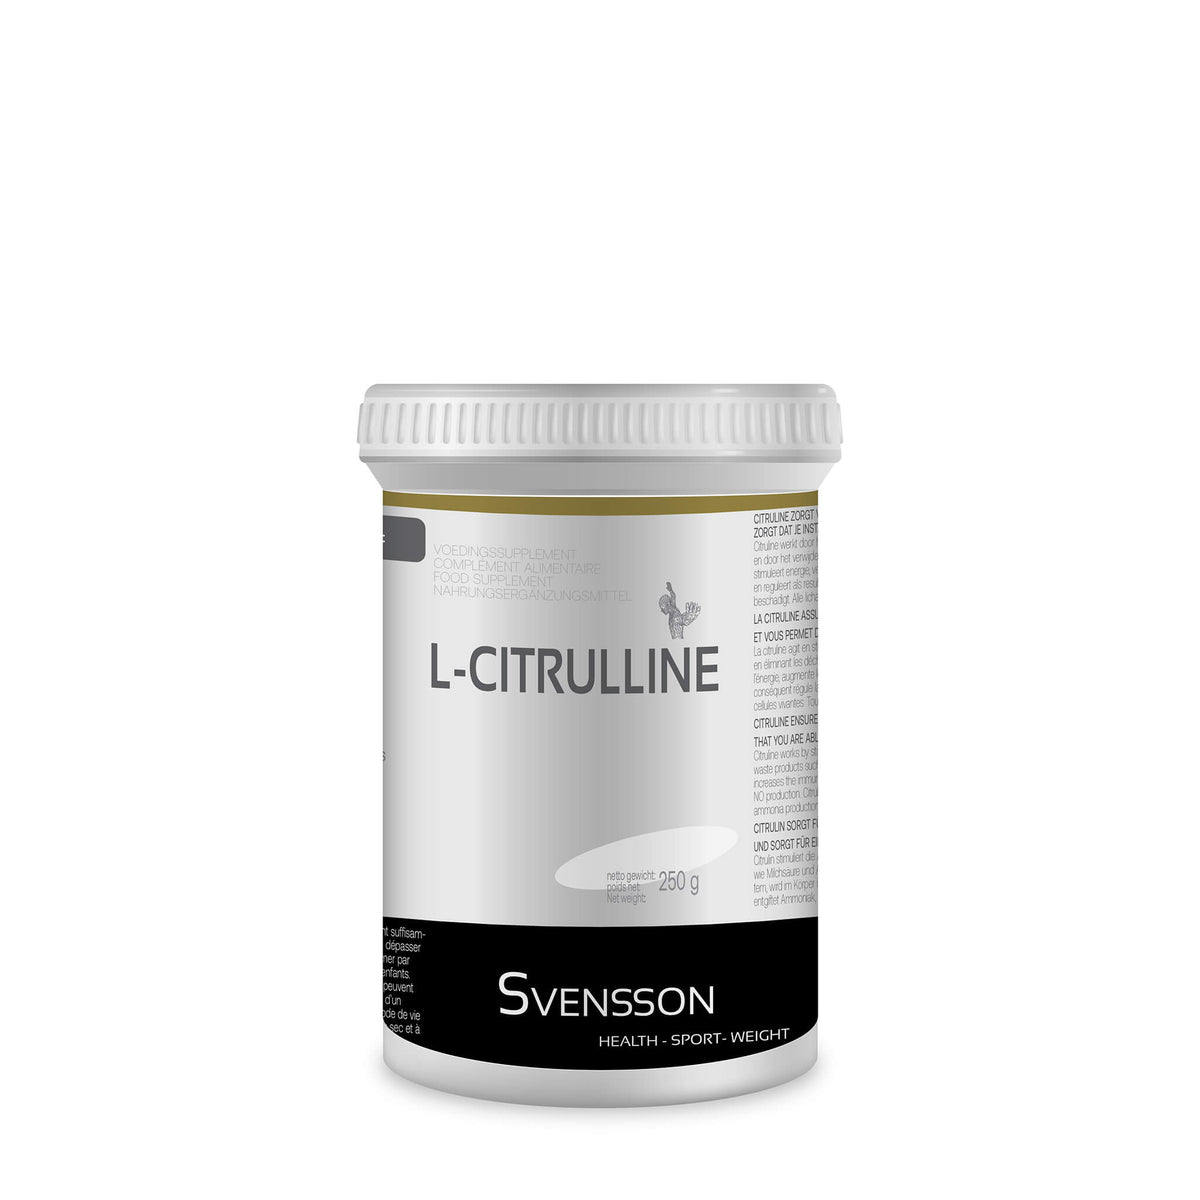 L-Citrulline supplement kopen voor een betere energievrijgave in het menselijk lichaam